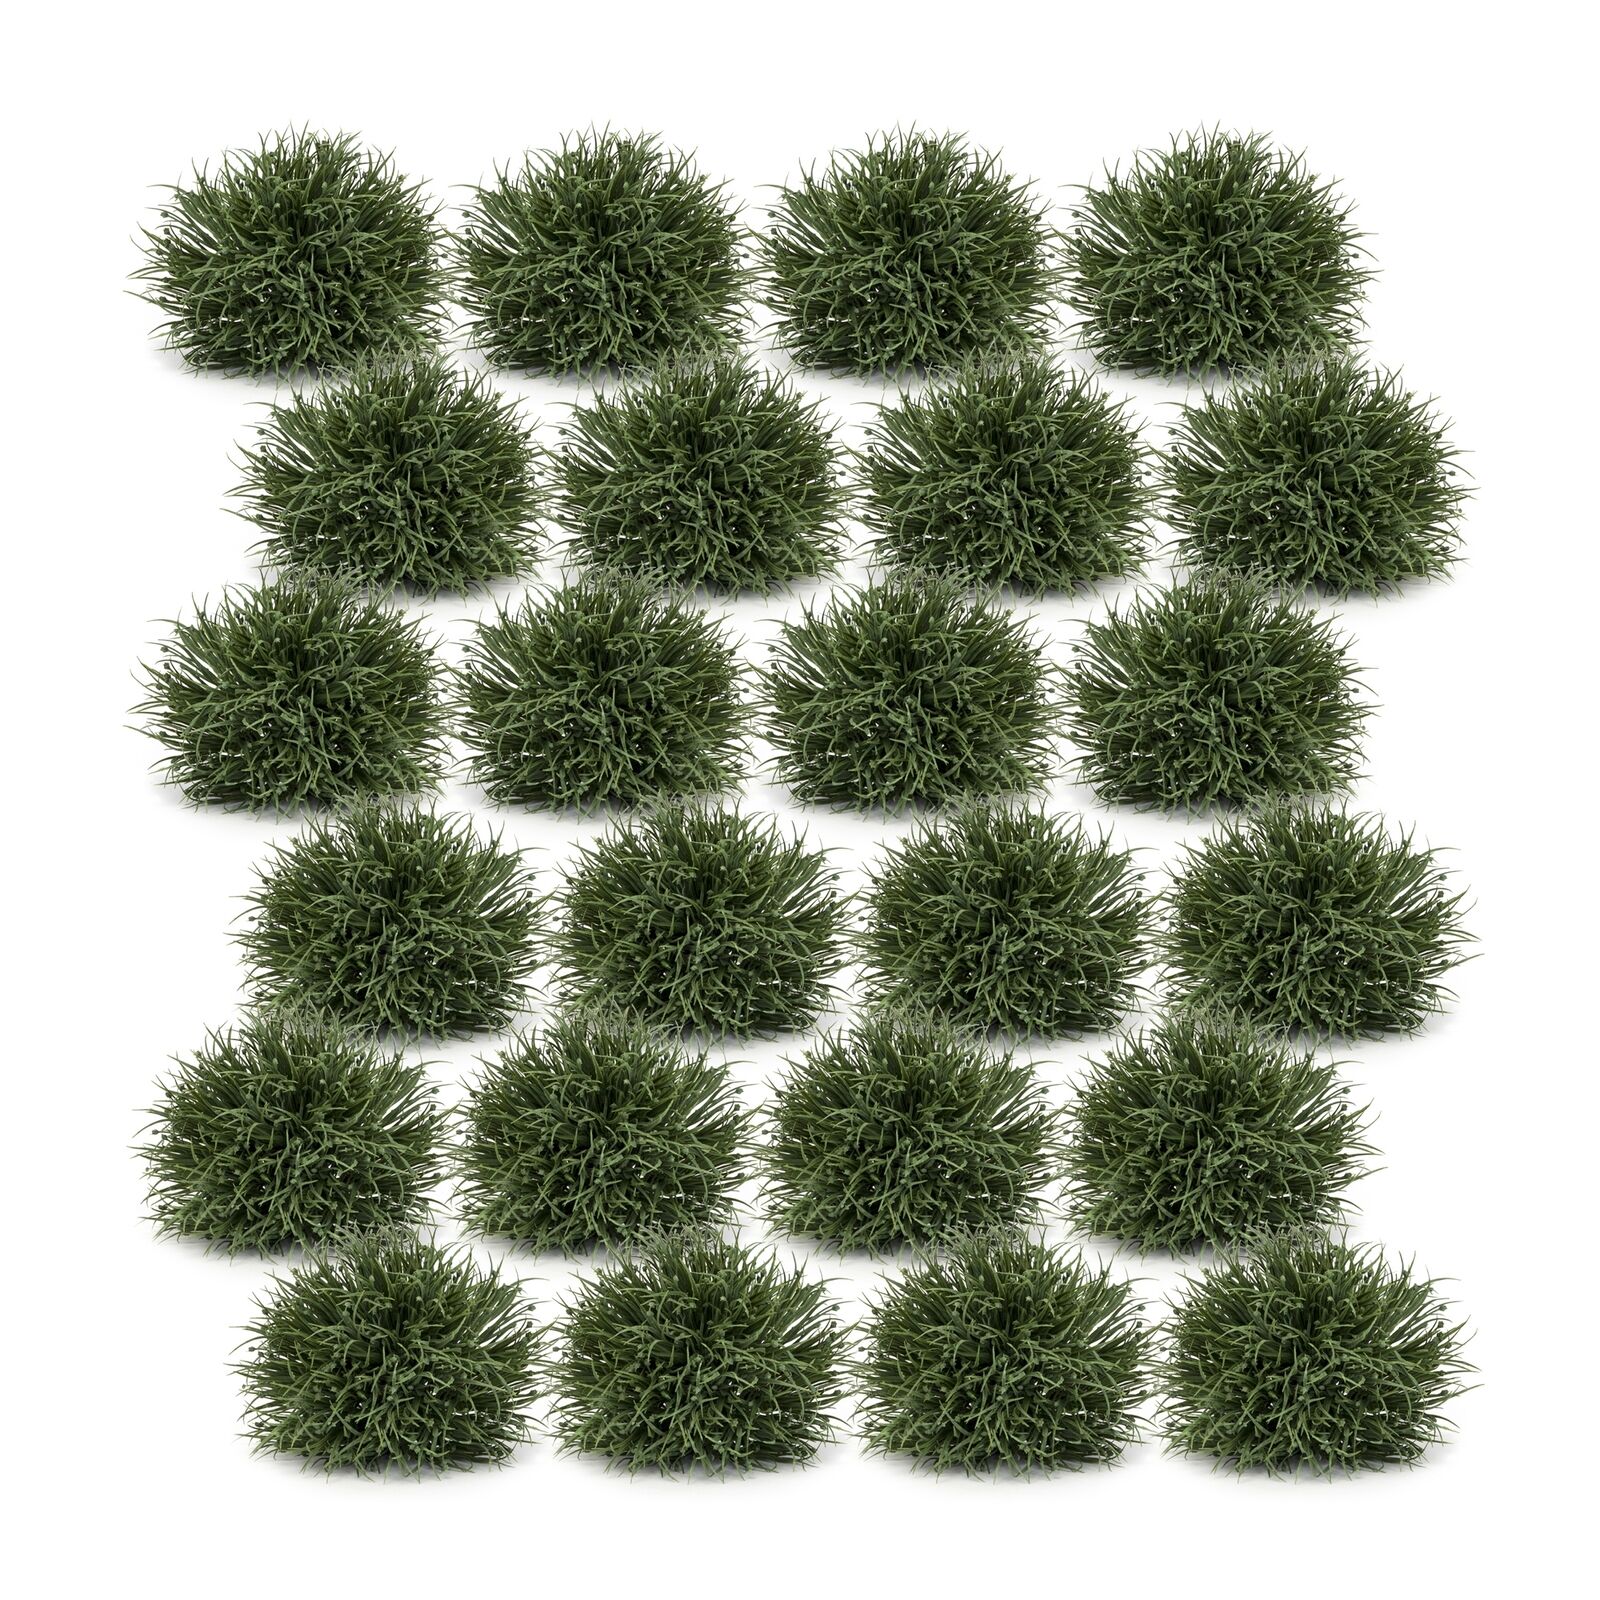 Melrose Spring Grass Half Orb (Set of 24)